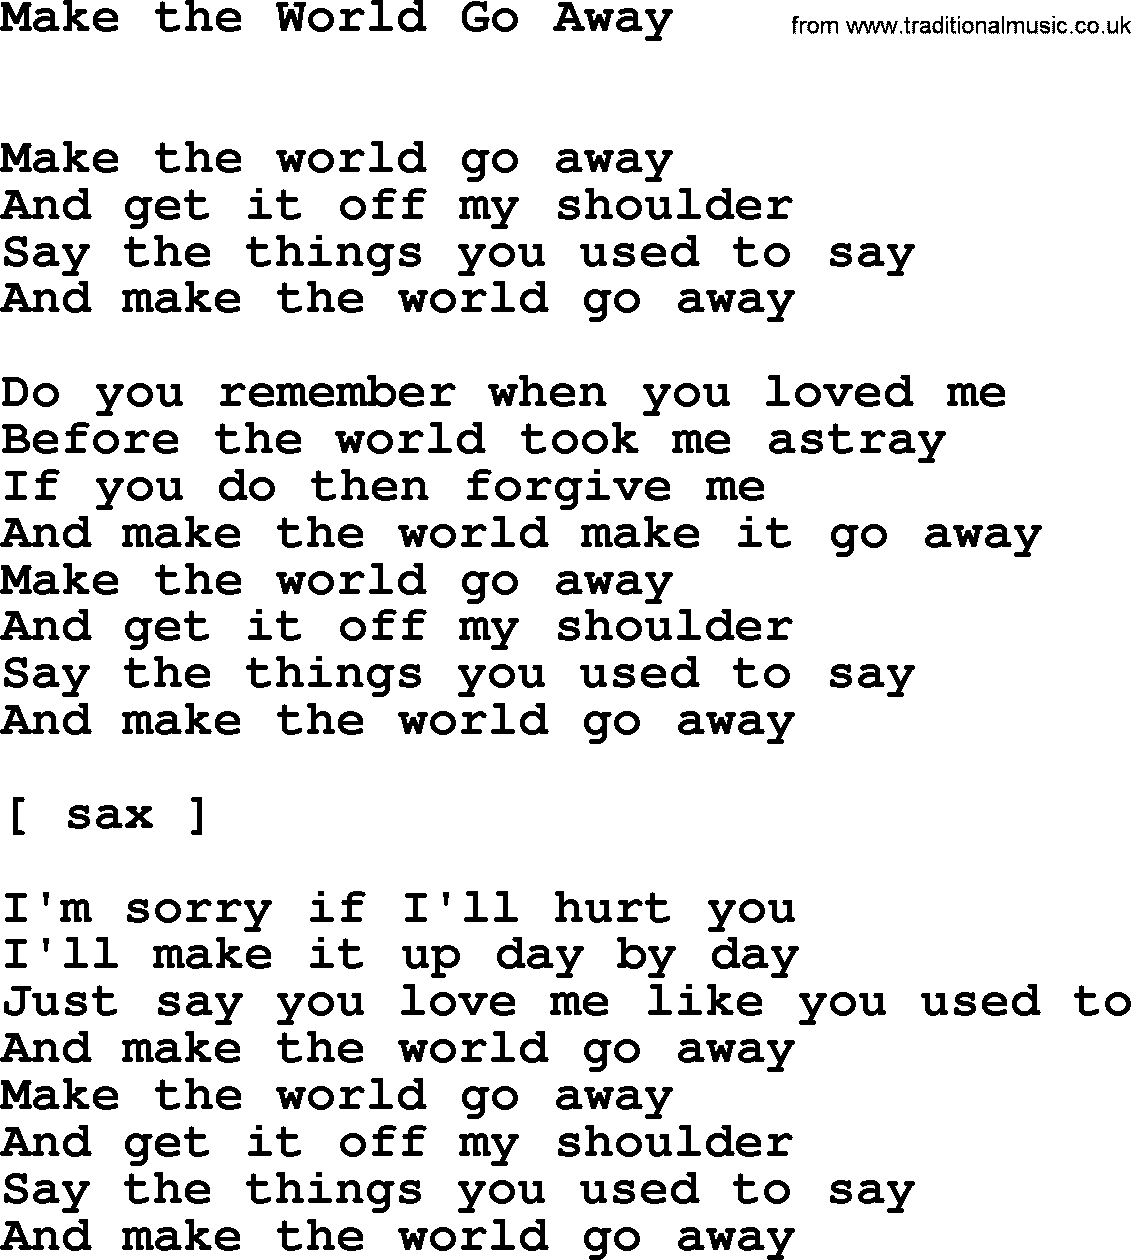 Willie Nelson song: Make the World Go Away lyrics